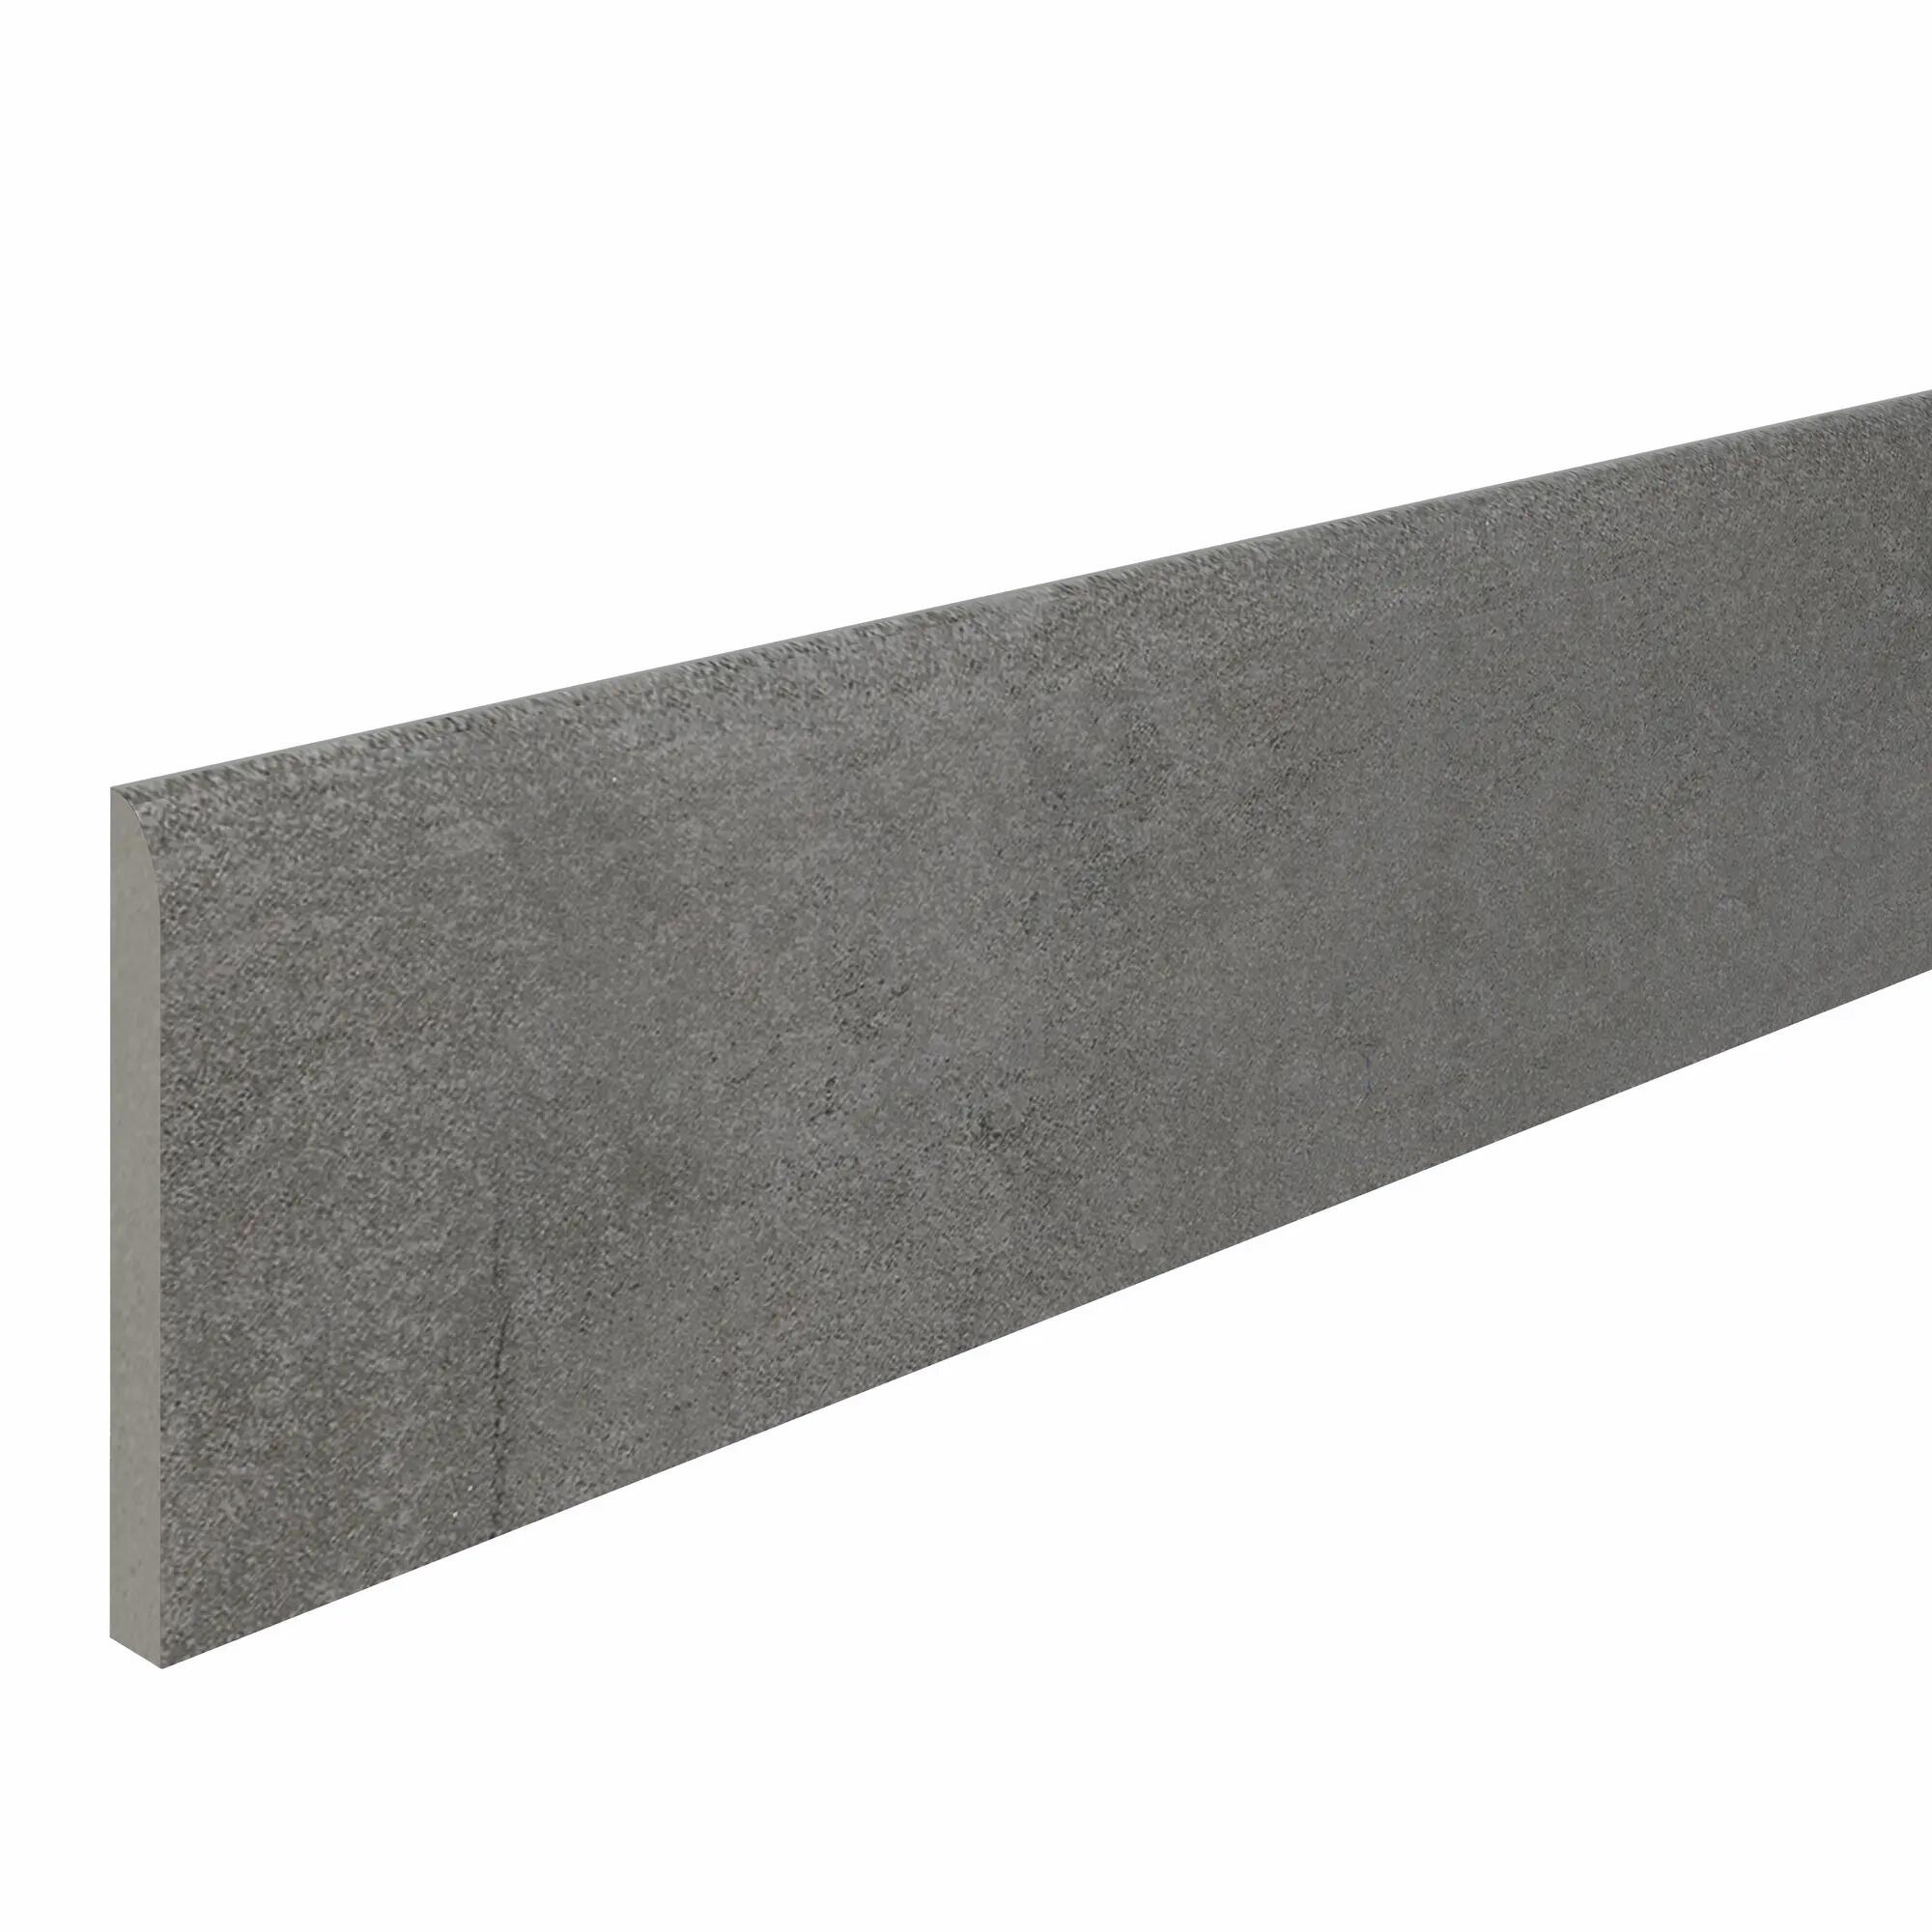 Pack de 4 rodapiés artens cemento 10x60 cm grafito